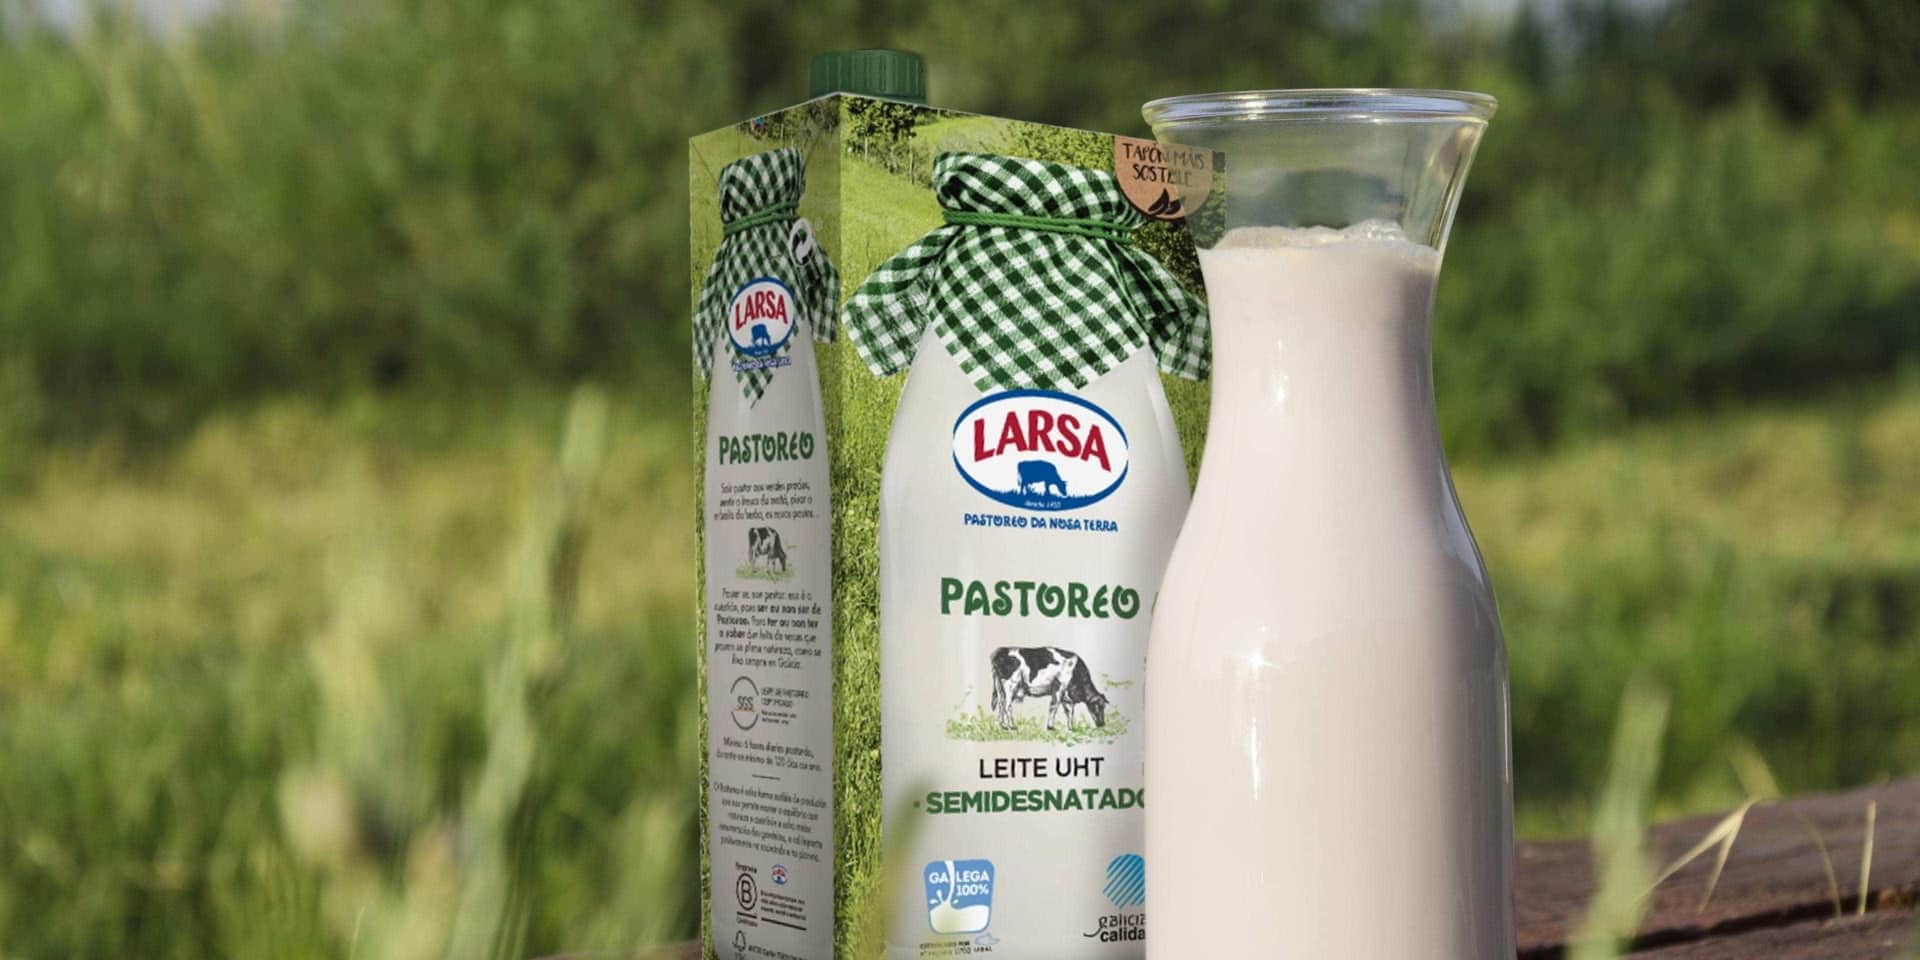 Leche de Pastoreo, ¿en qué se diferencia de la leche que no es de Pastoreo?